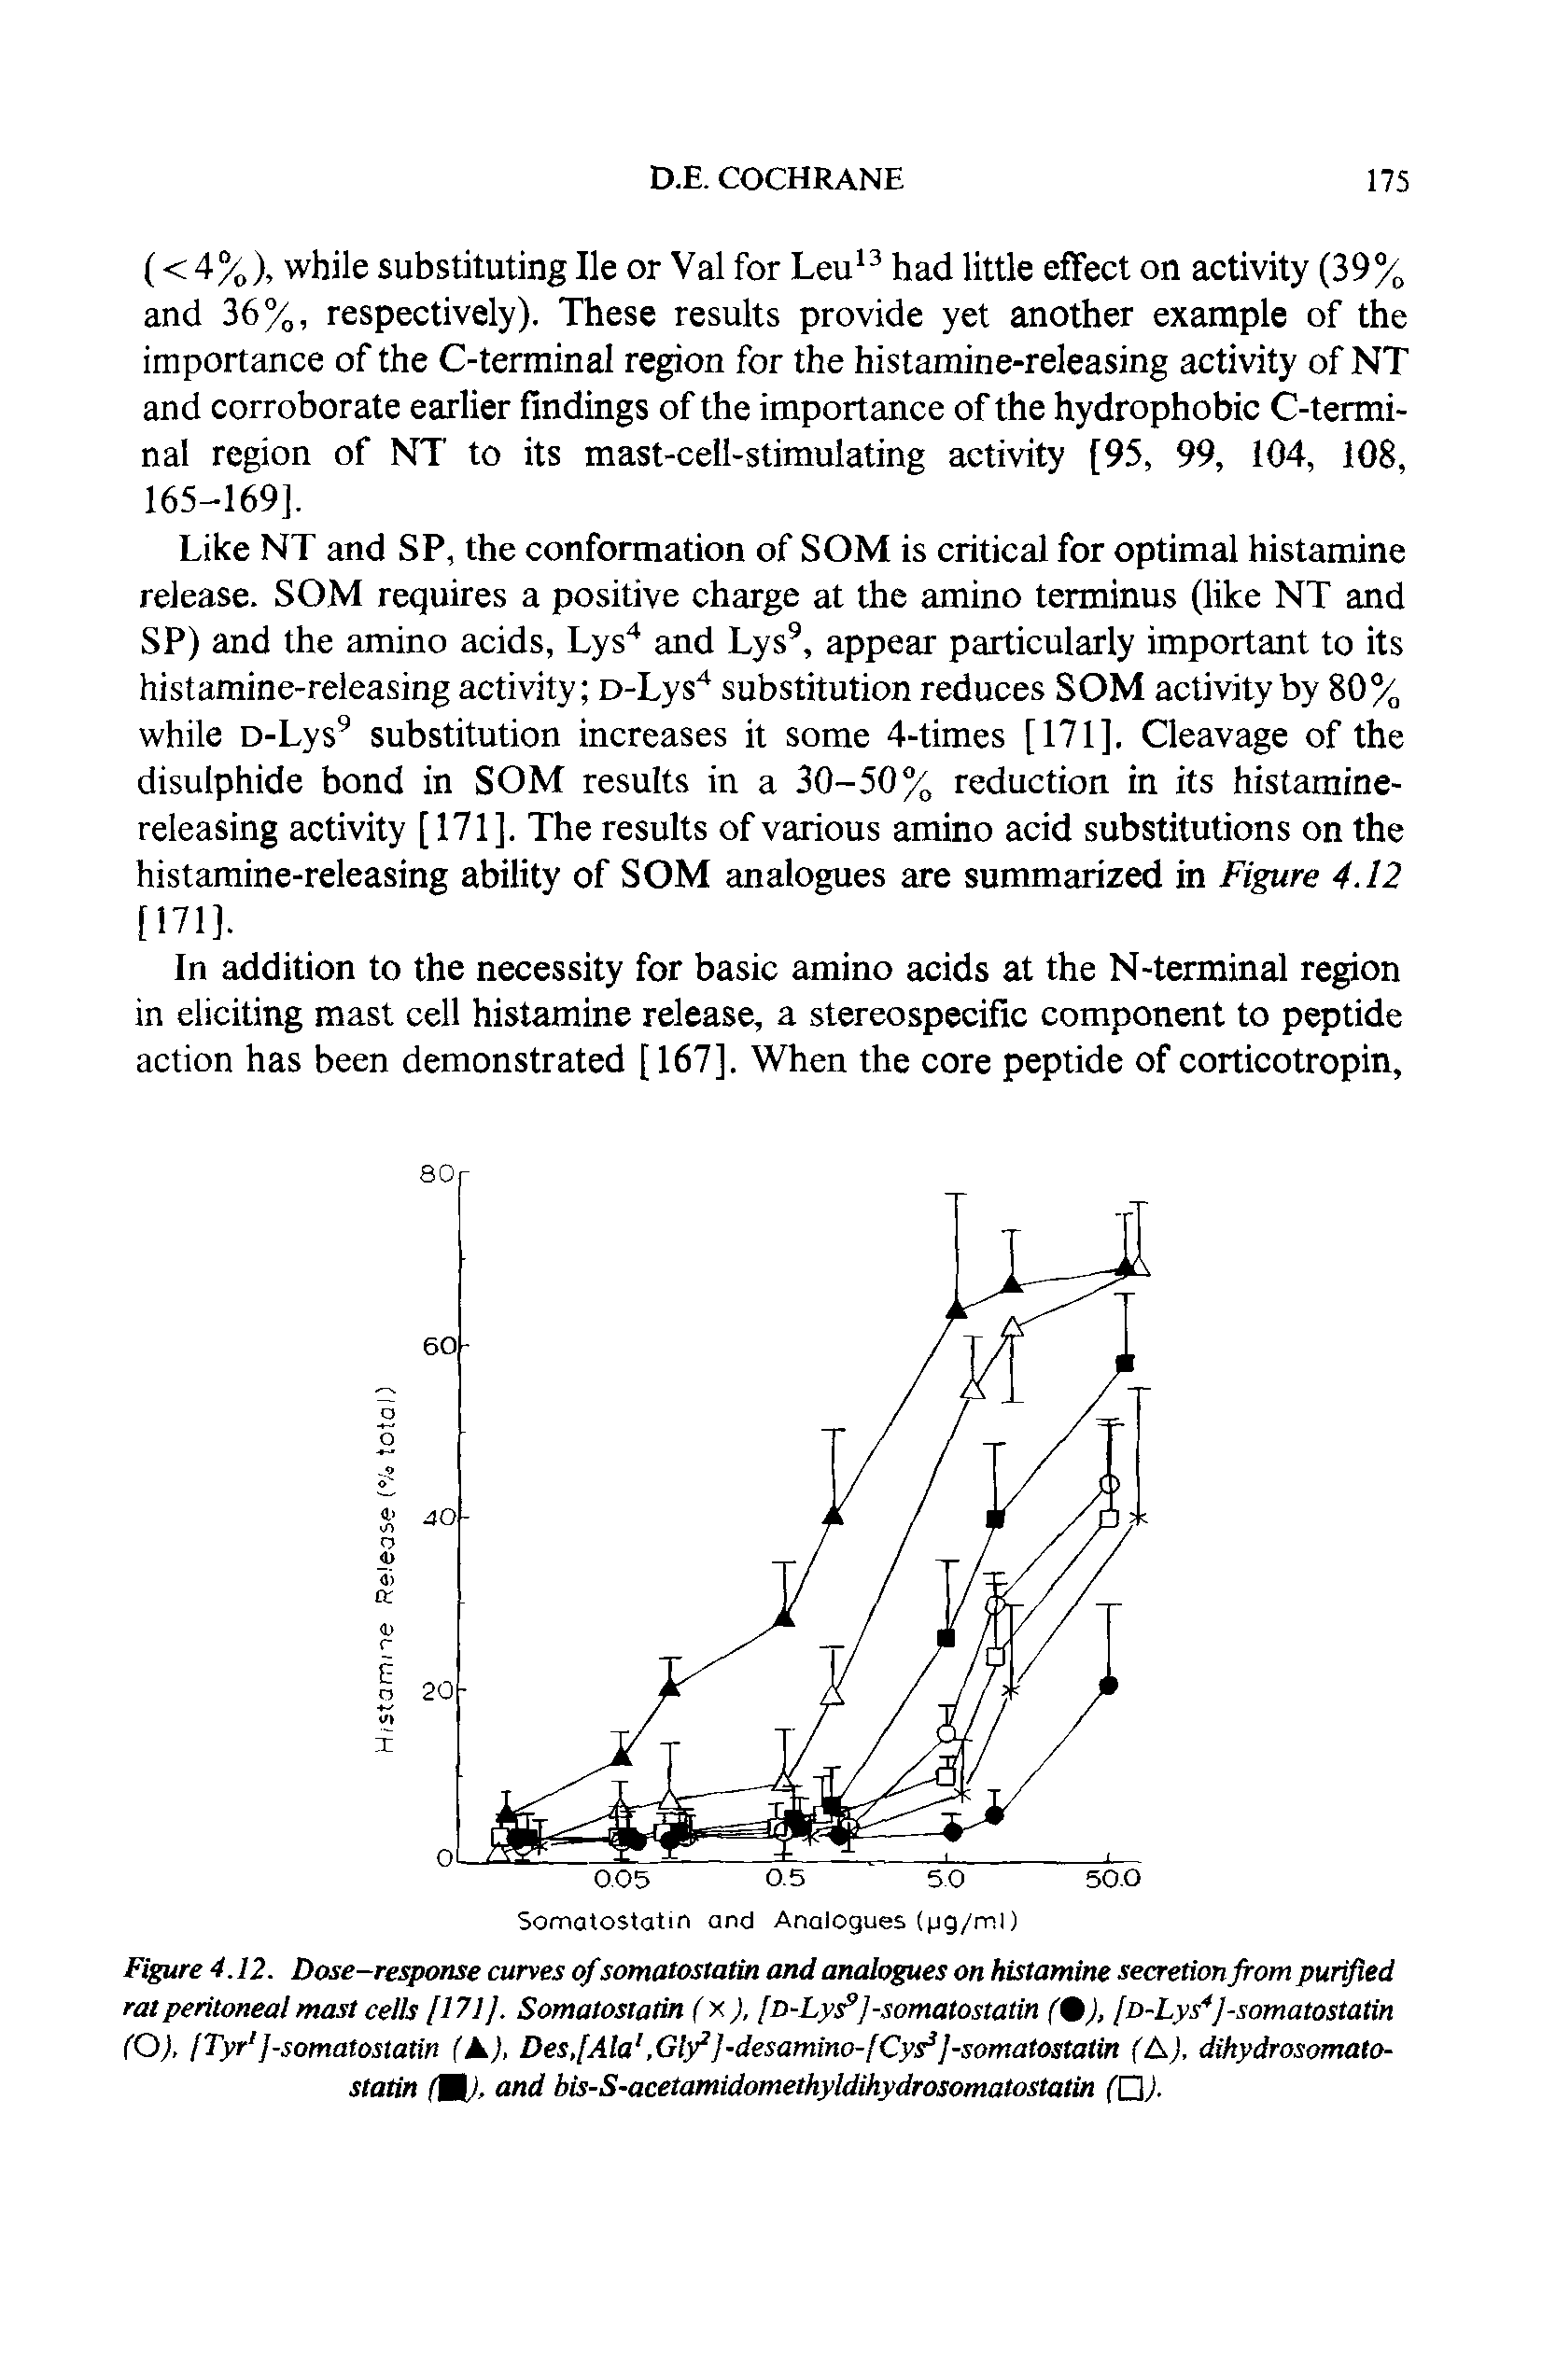 Figure 4.12. Dose-response curves ofsomatostatin and analogues on histamine secretionfrom purified rat peritoneal mast cells [171], Somatostatin (x), [D-Lys9]-somatostatin f0J, [D-Lys4]-somatostatin (O), [Tyr1 J-somatostatin (A), Des,[Ala, Gly2]-desamino-fCys3]-somatostatin (A), dihydrosomatostatin m). and bis-S-acetamidomethyldihydrosomatostatin (Q).